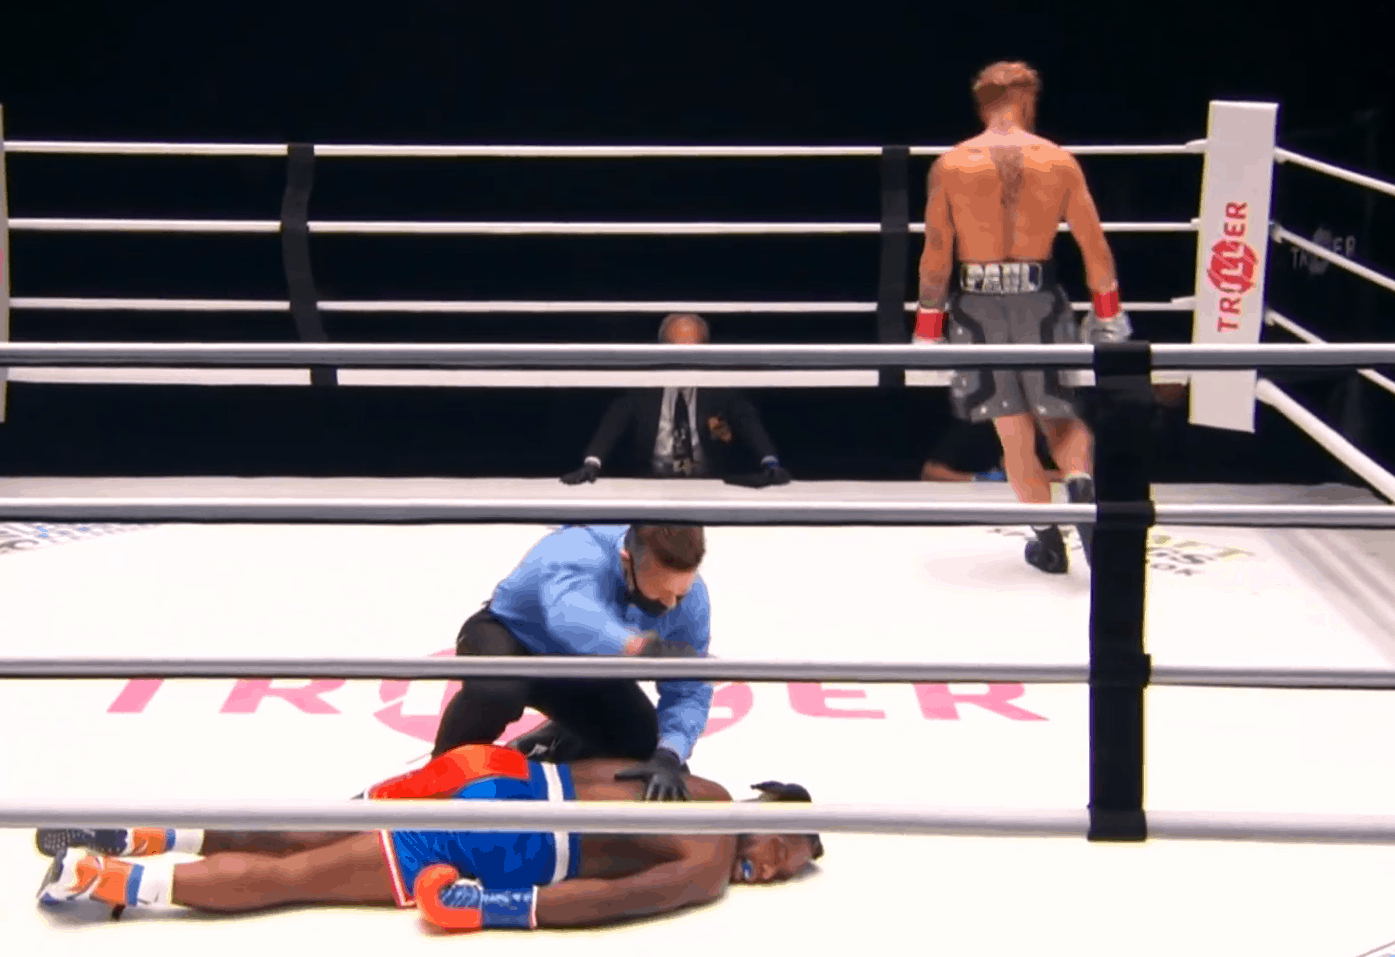 Nate Robinson, ses débuts ratés à la boxe avec un KO impressionnant…